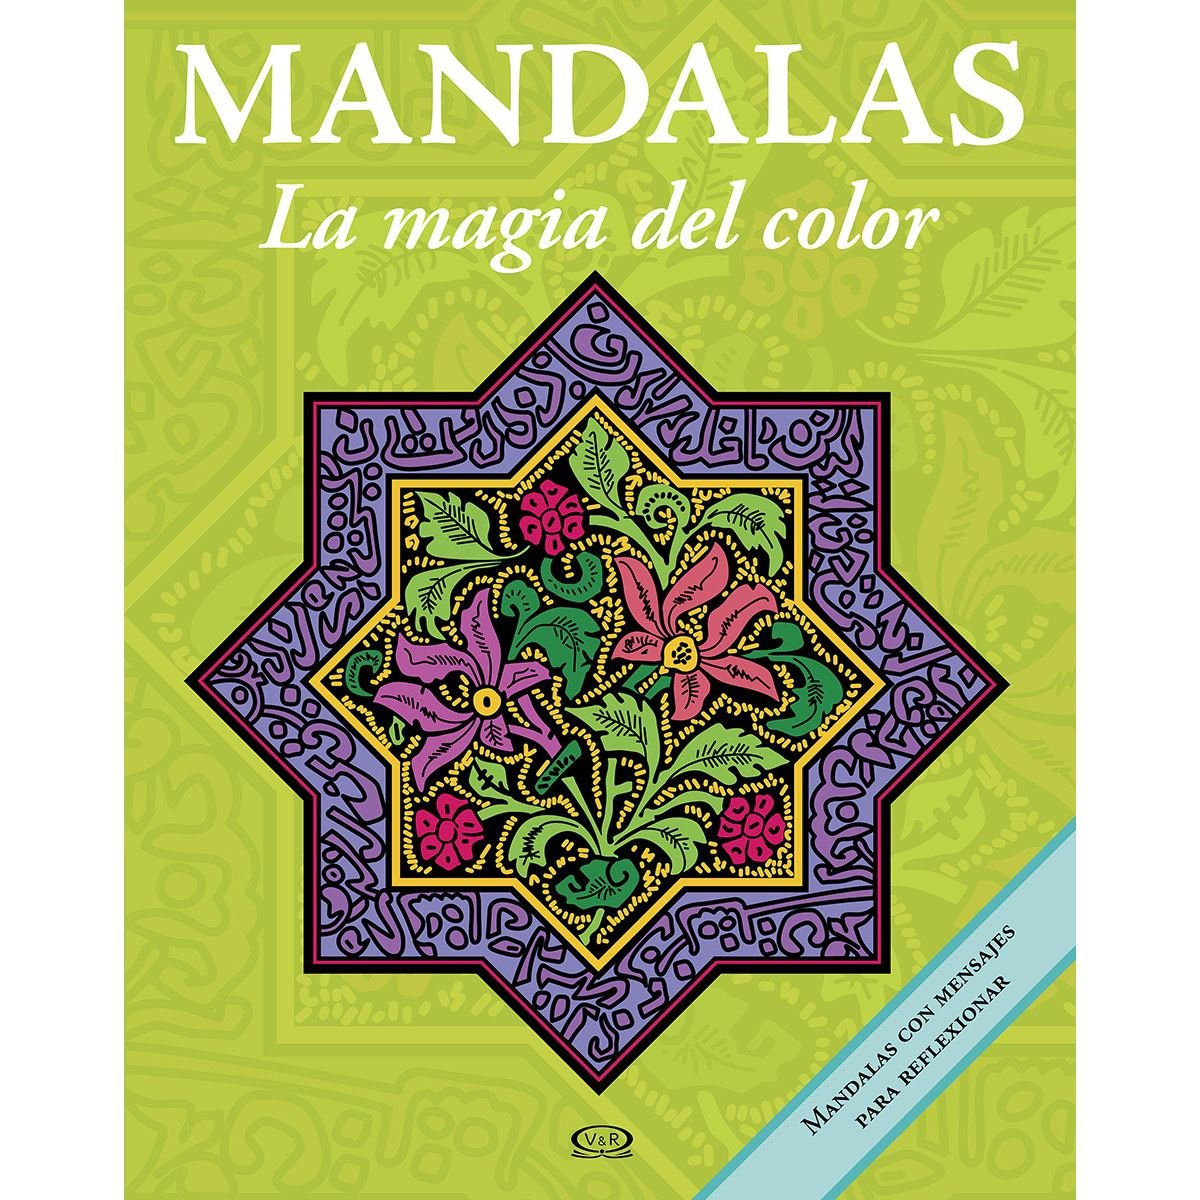 Mandalas. La magia del color